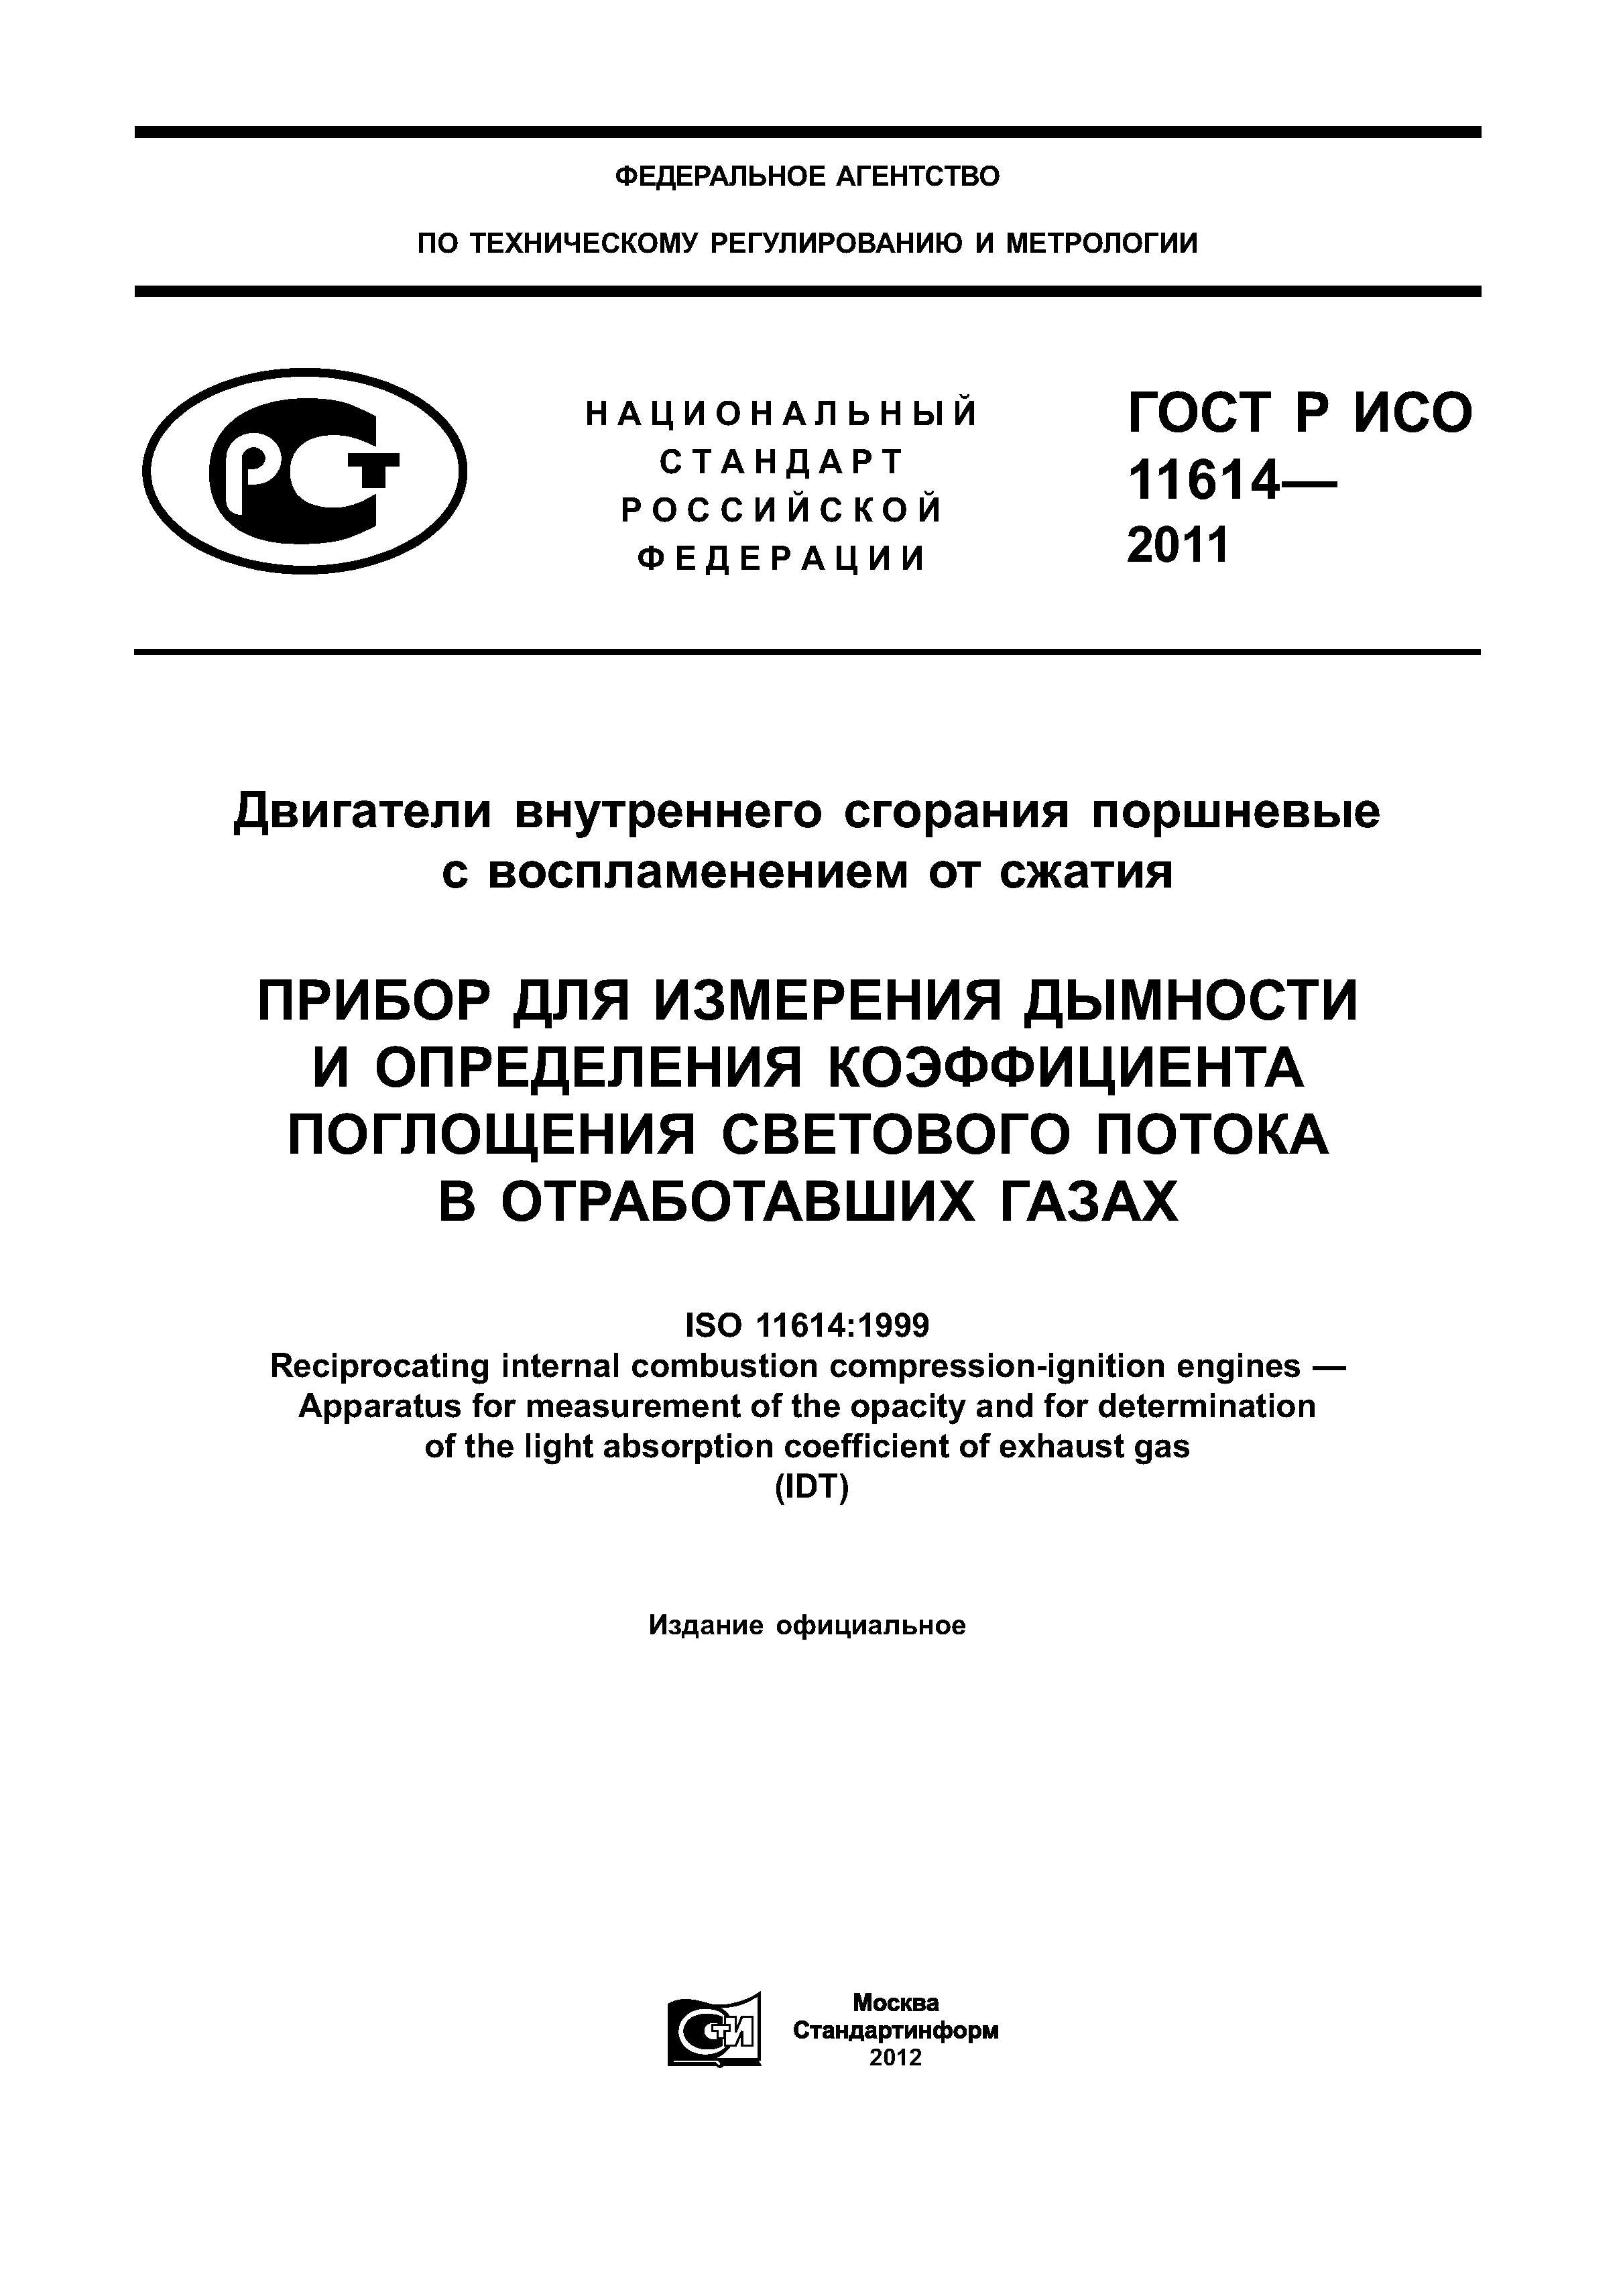 ГОСТ Р ИСО 11614-2011